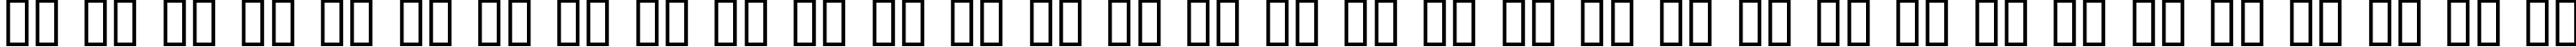 Пример написания русского алфавита шрифтом Lowtech